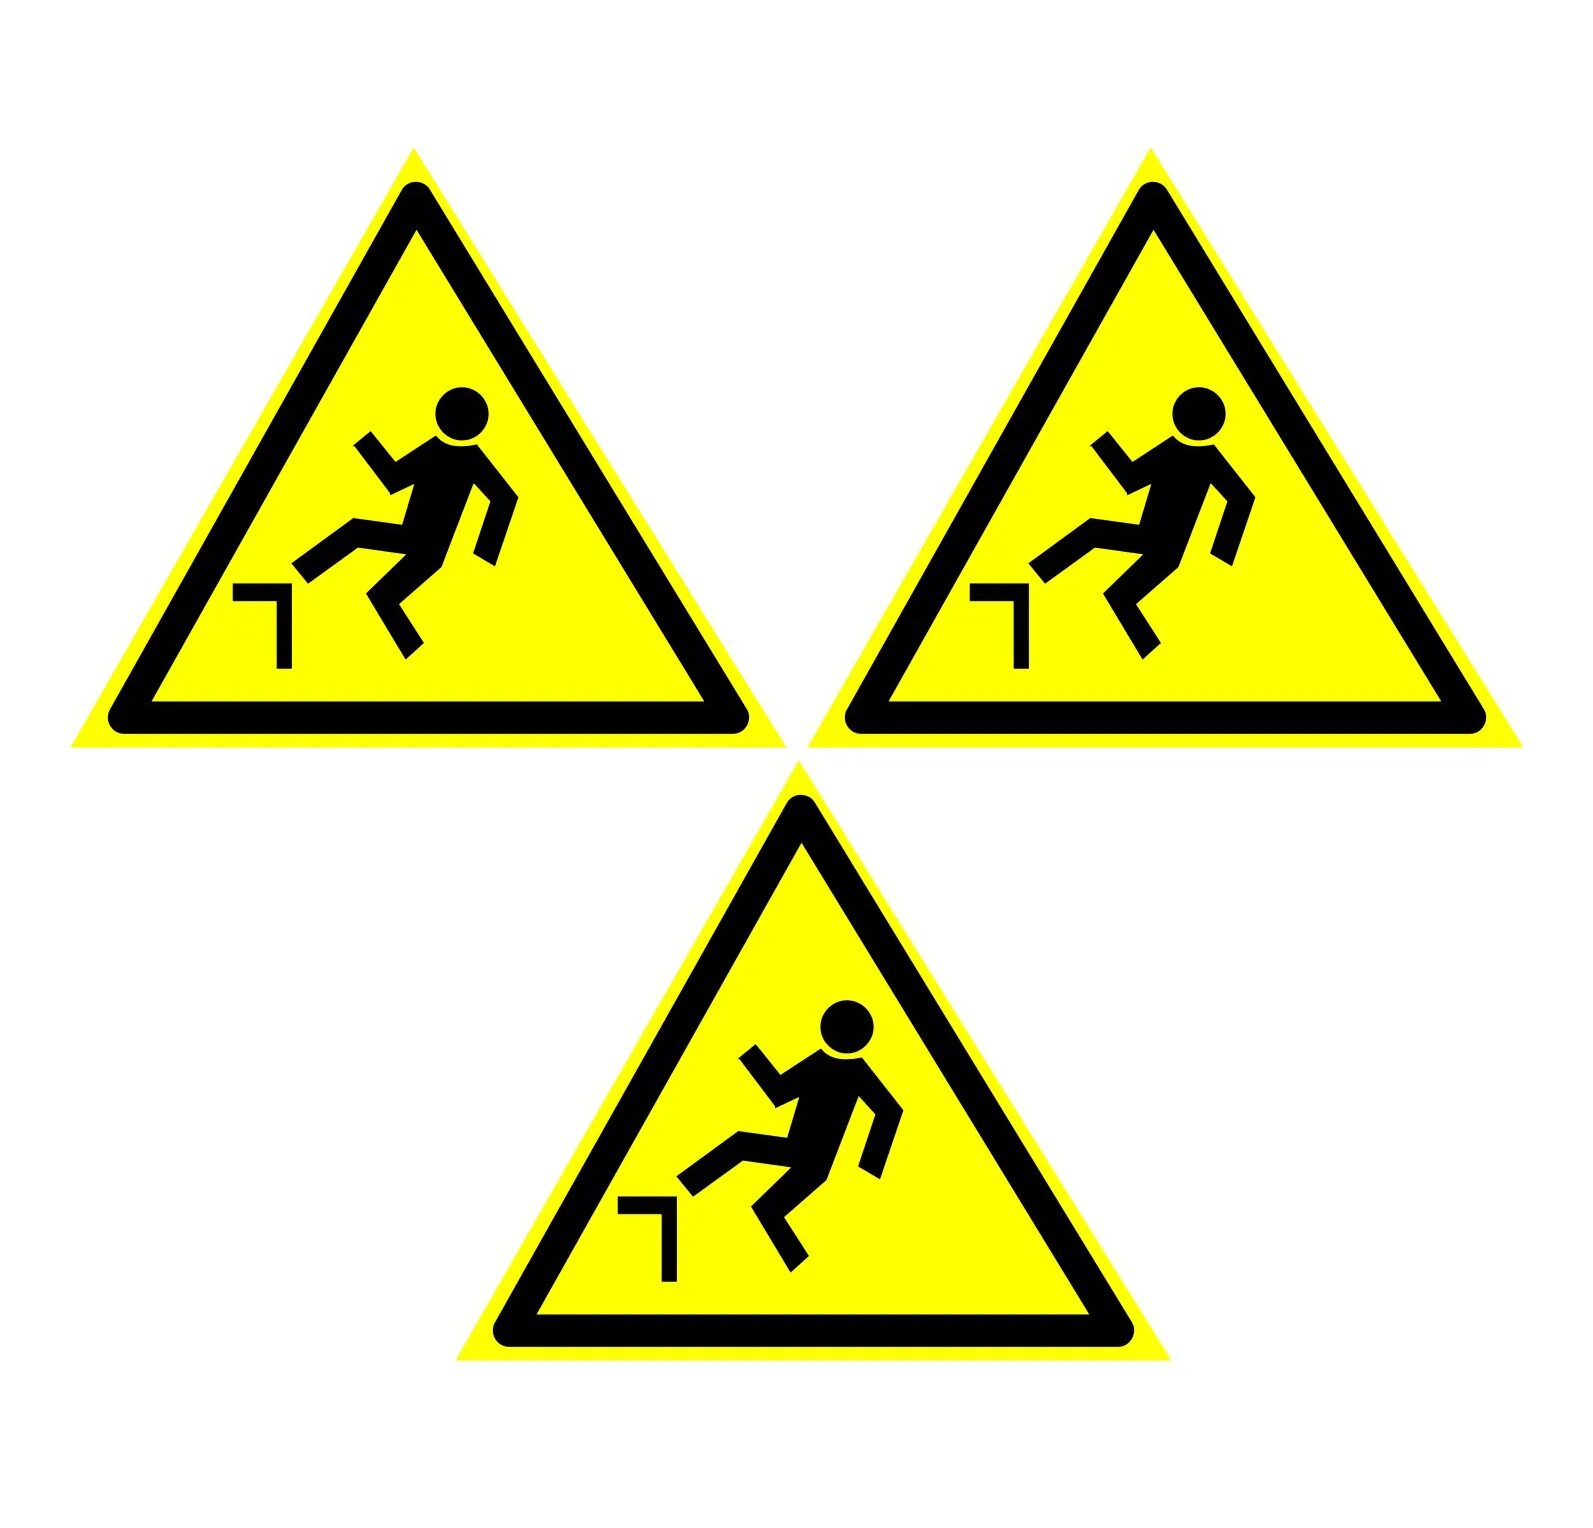 Знак w14 осторожно малозаметное препятствие. Знак w15. Знак w15 осторожно возможно падение с высоты. Знак осторожно малозаметное препятствие ГОСТ Р 12.4.026-2015.